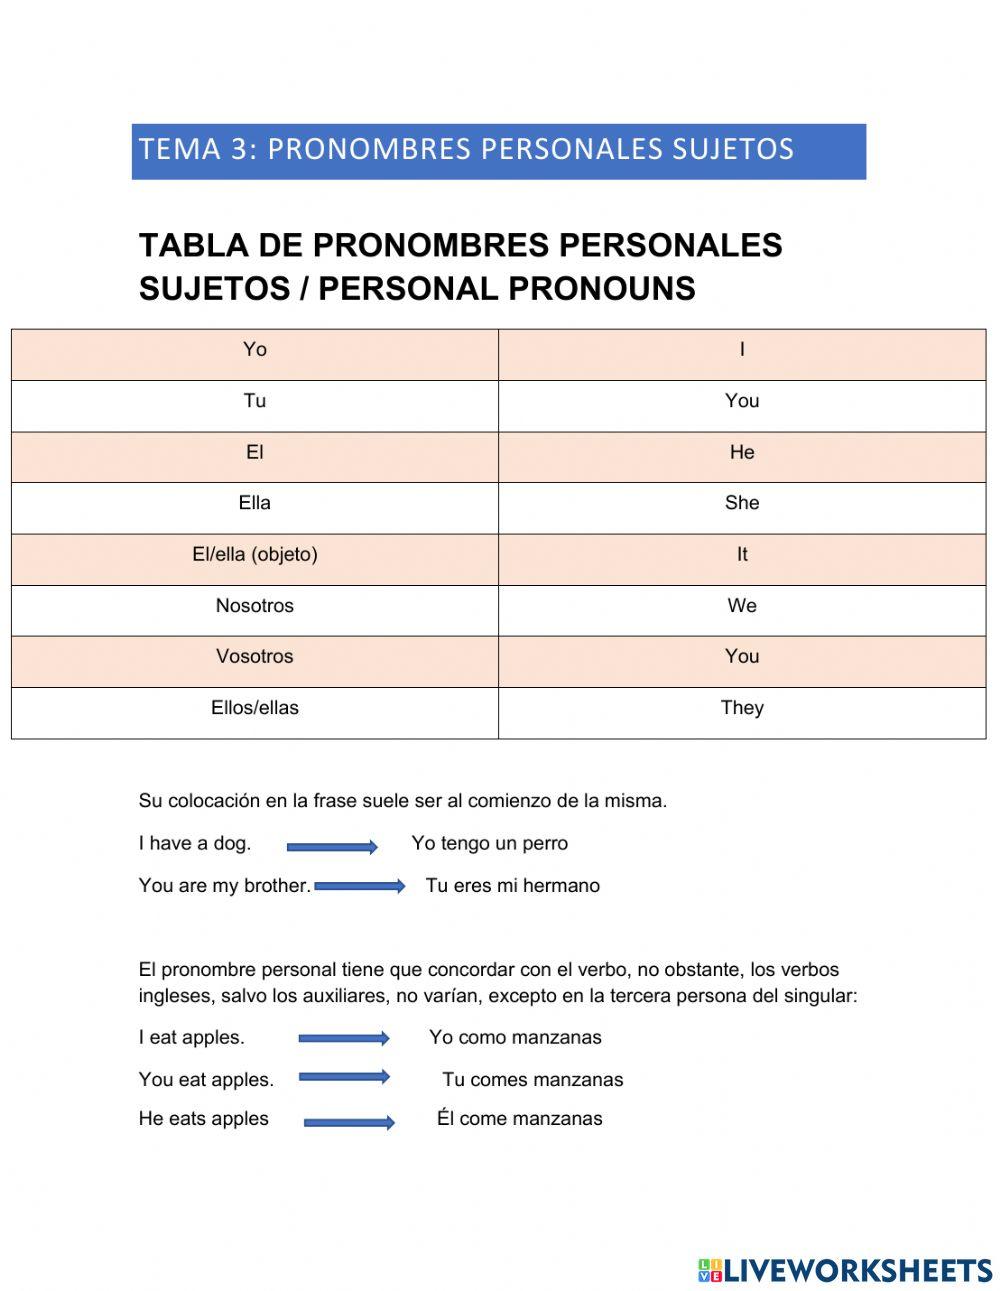 Pronombres personales- Personal pronouns